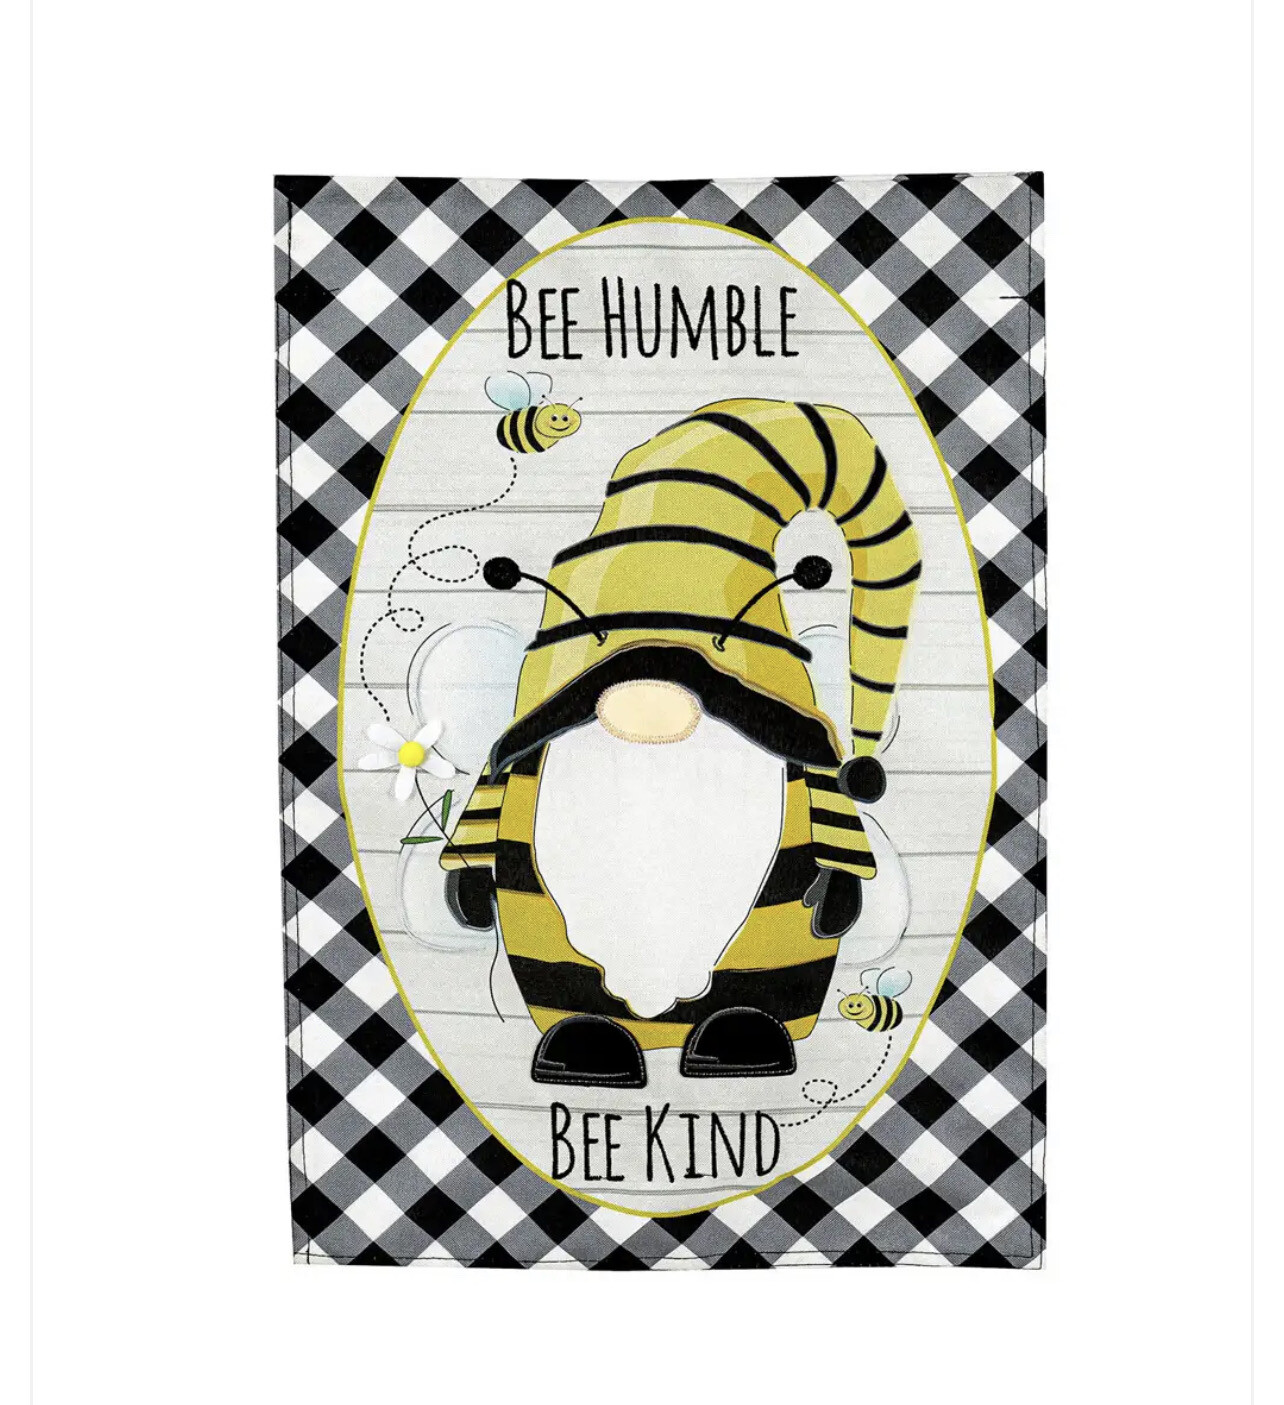 Bee Humble & Kind Bee Flag